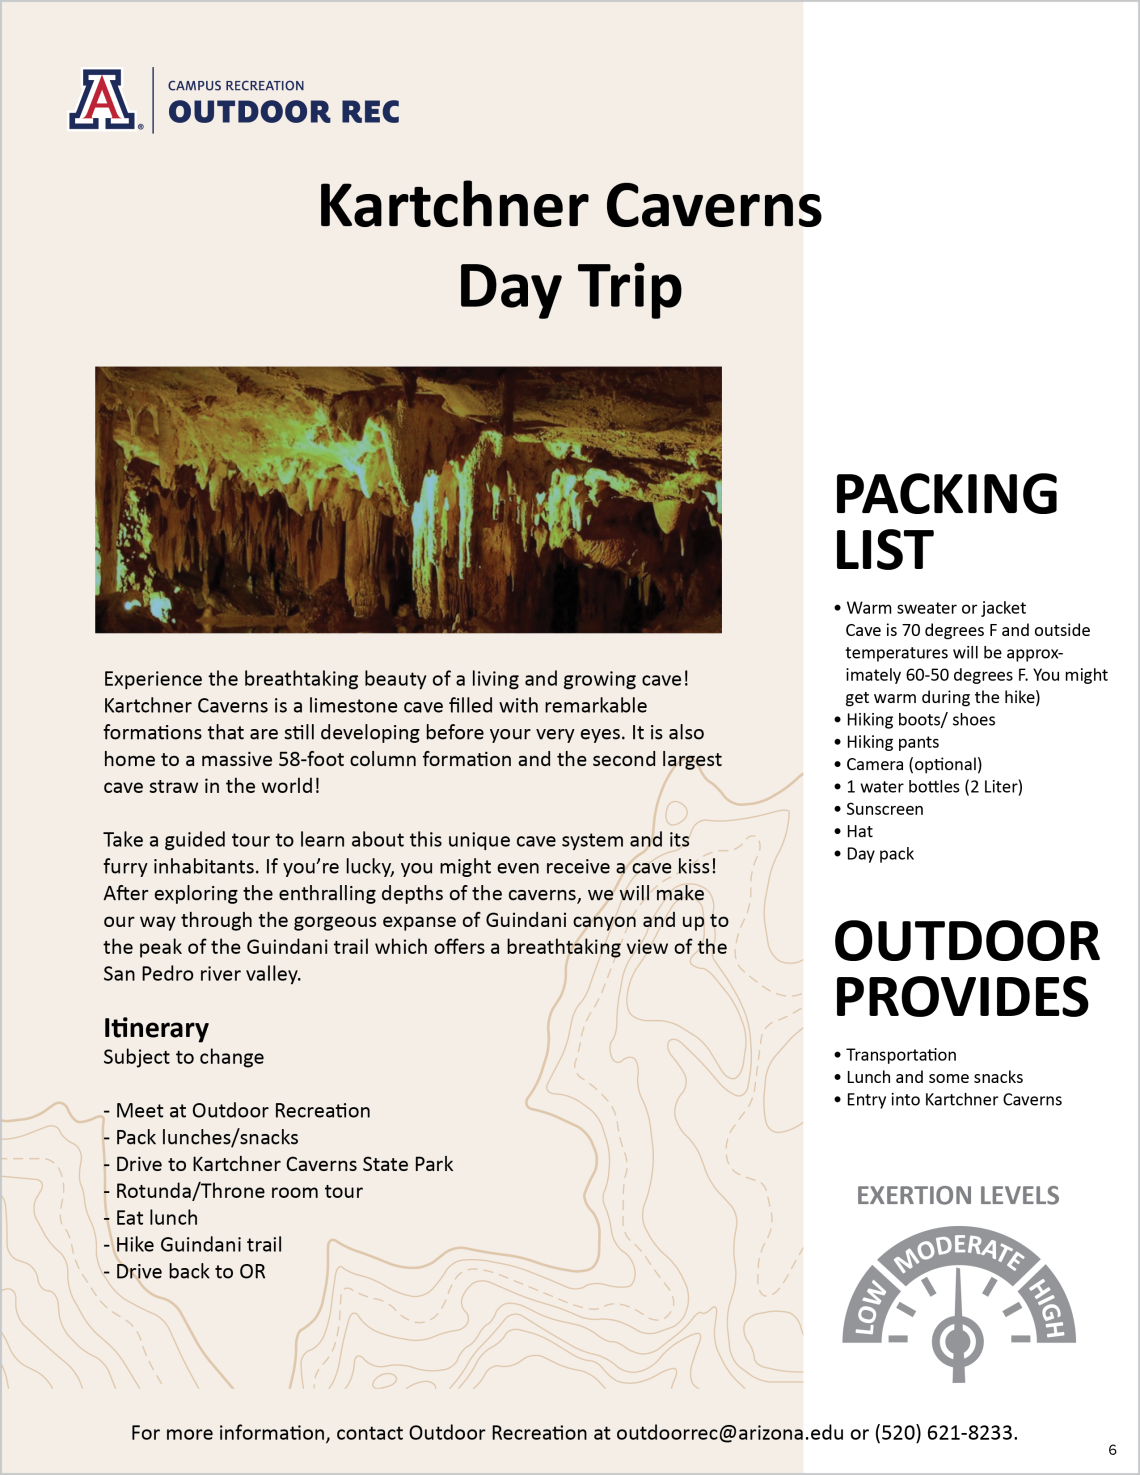 Kartchner Caverns Day Hike image